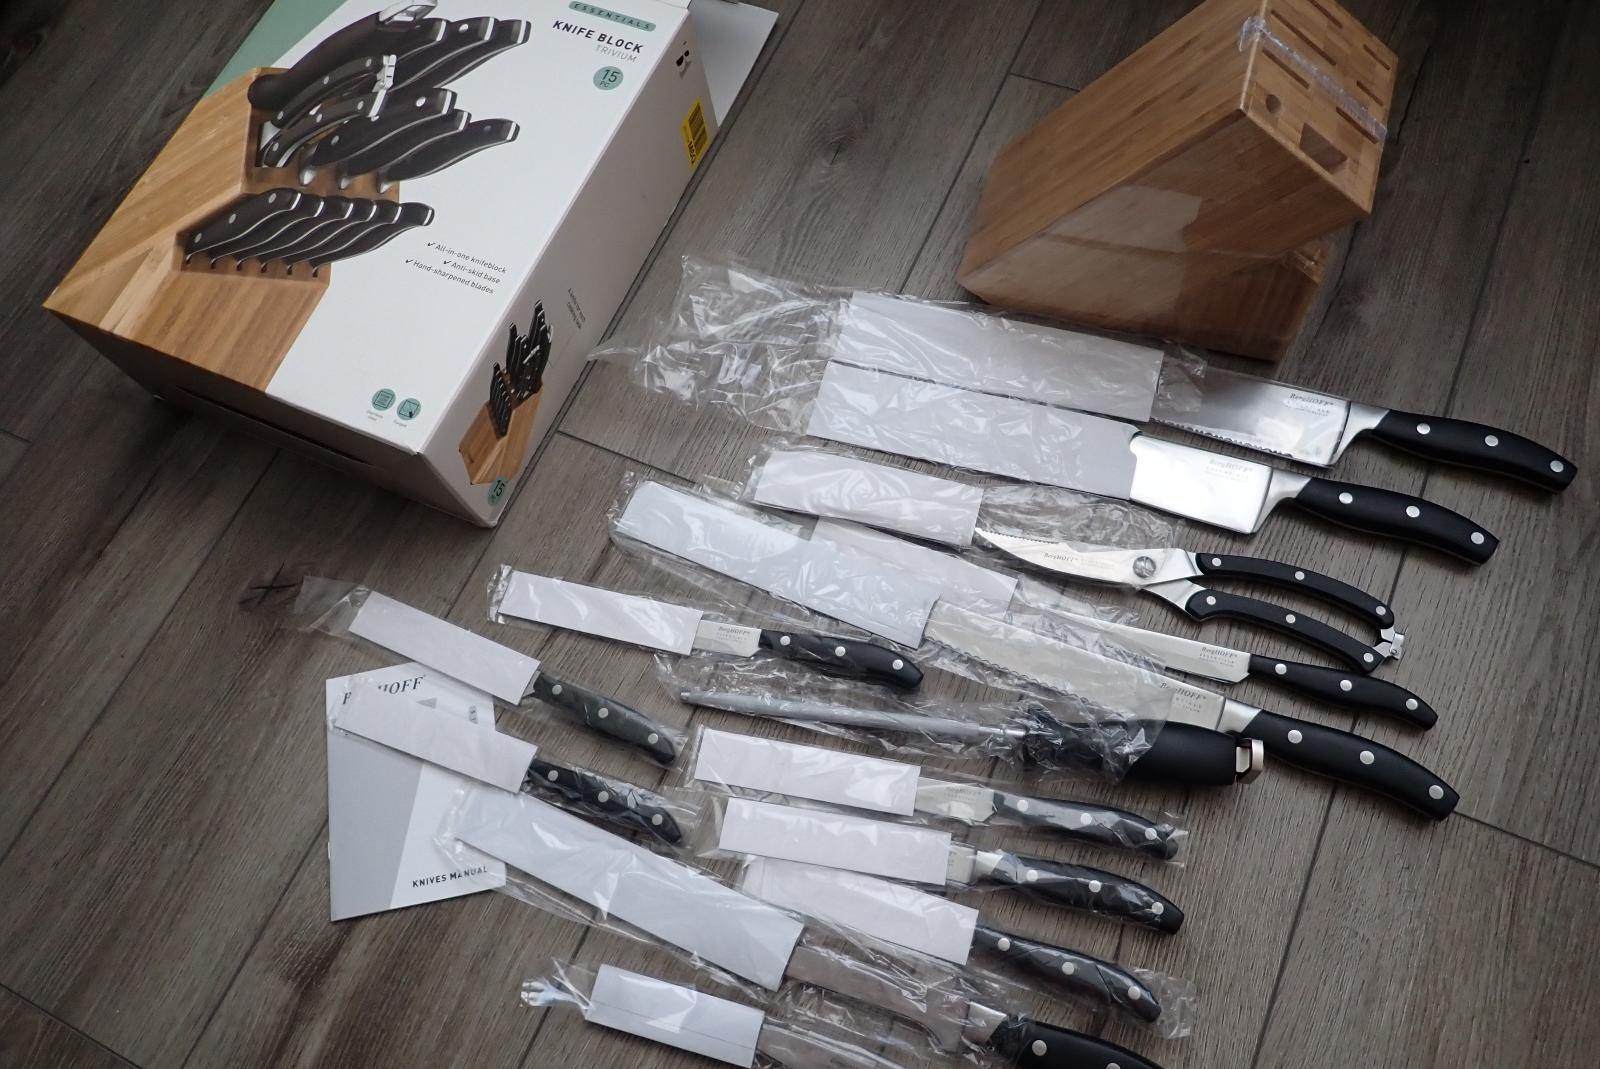 Sada nožů ve stojanu Berghoff  15 ks - Vybavení do kuchyně